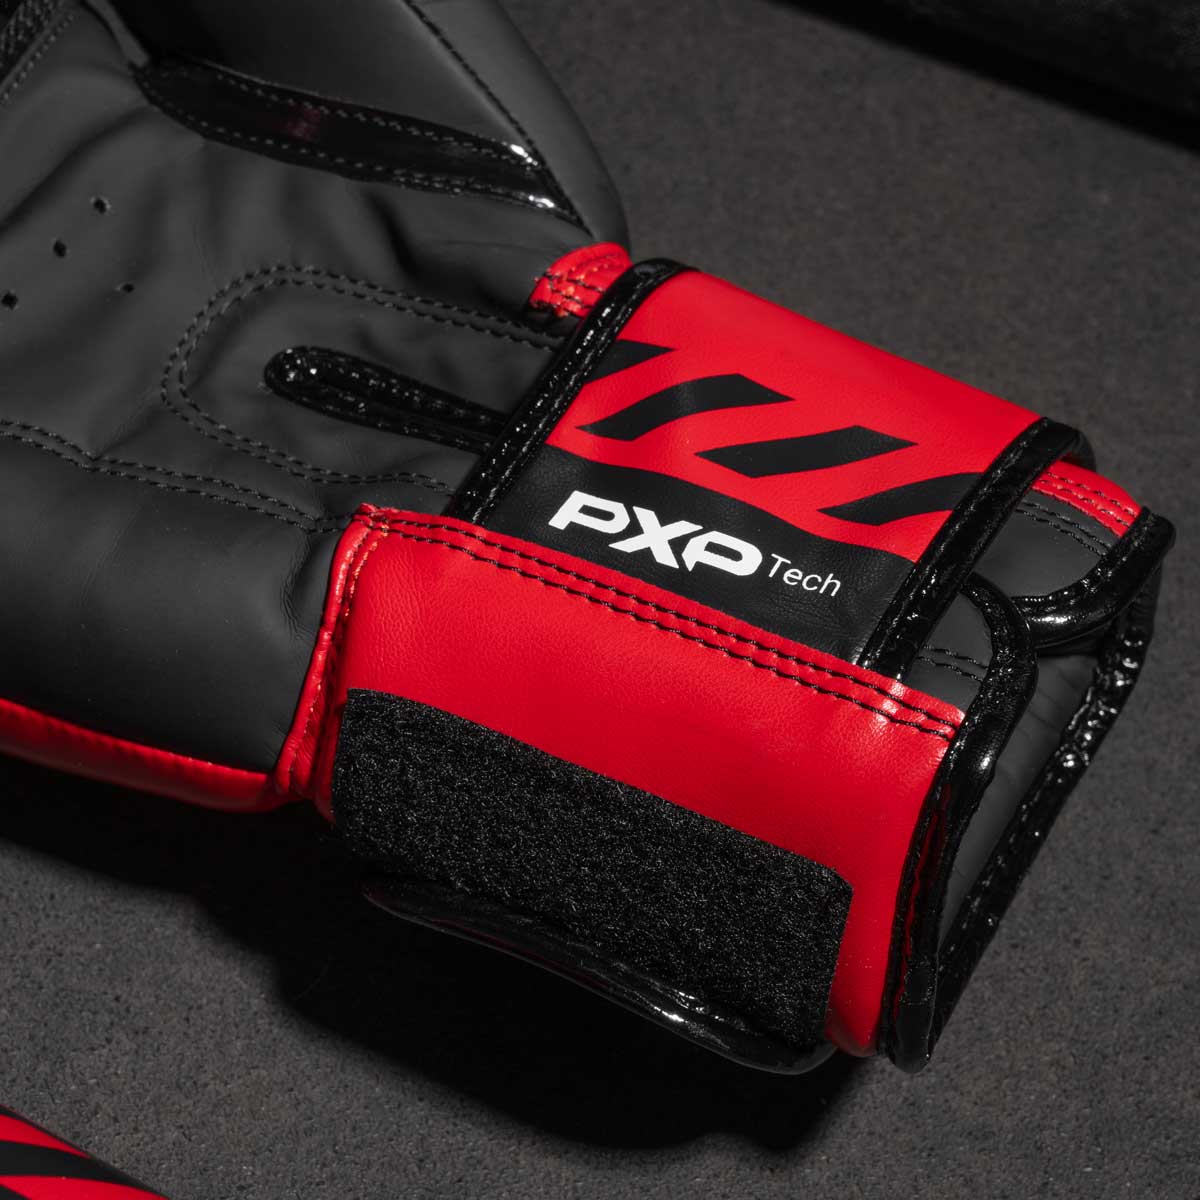 Phantom Boxhandschuhe APEX in der limitierten RED Edition. Perfekte Handschuhe für dein Kampfsporttraining wie z.B MMA, Muay Thai, Thaiboxen, K1 oder Boxen.